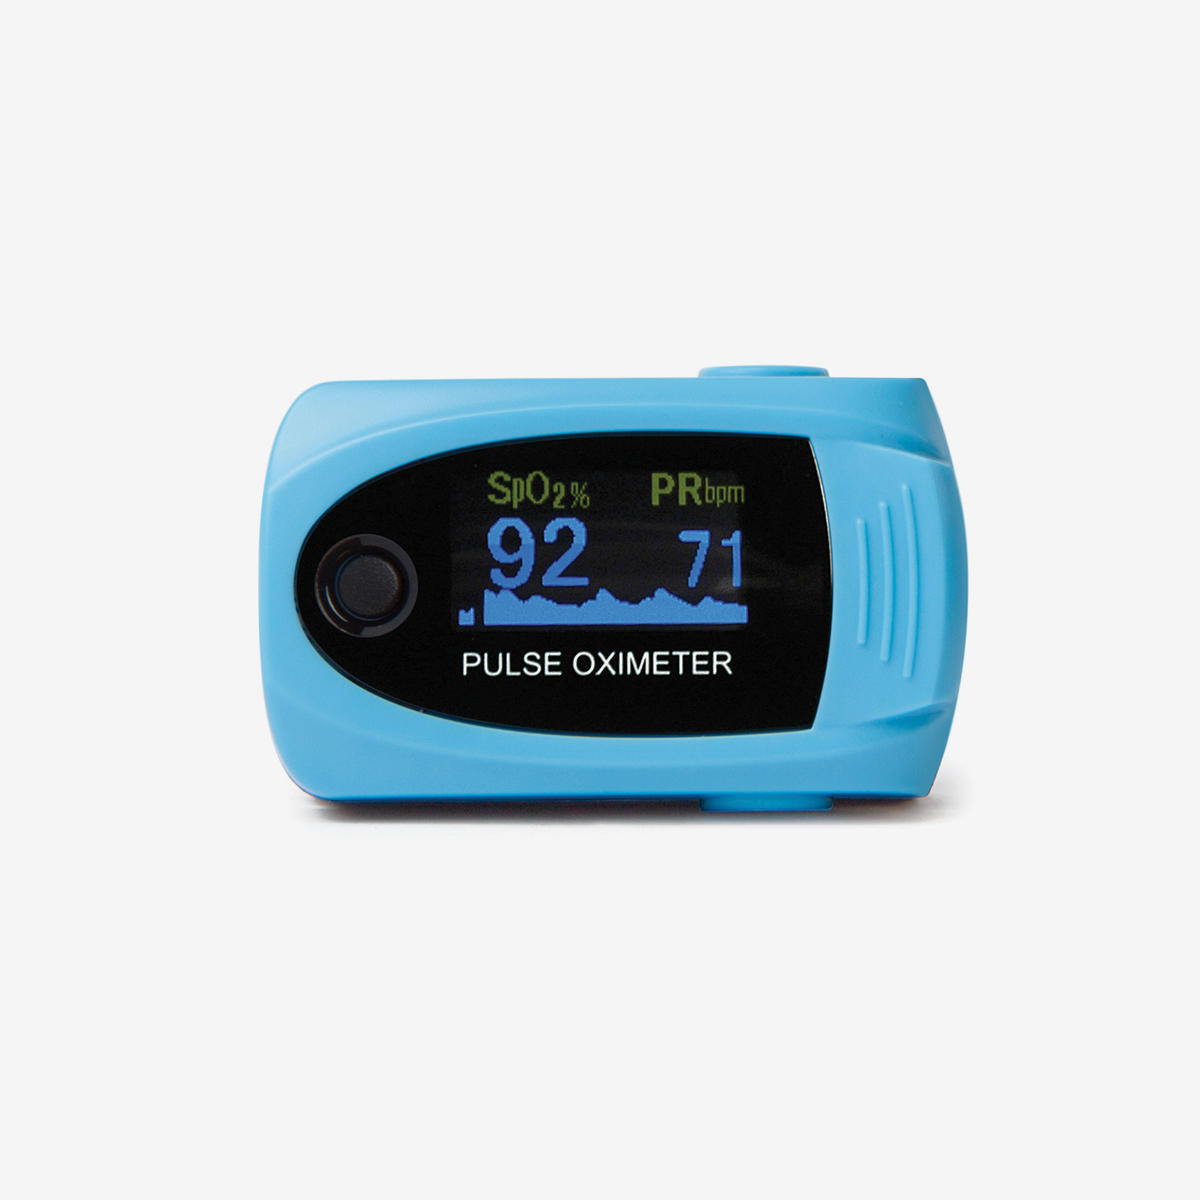 Light blue MD300 C63 pulse oximeter on white background